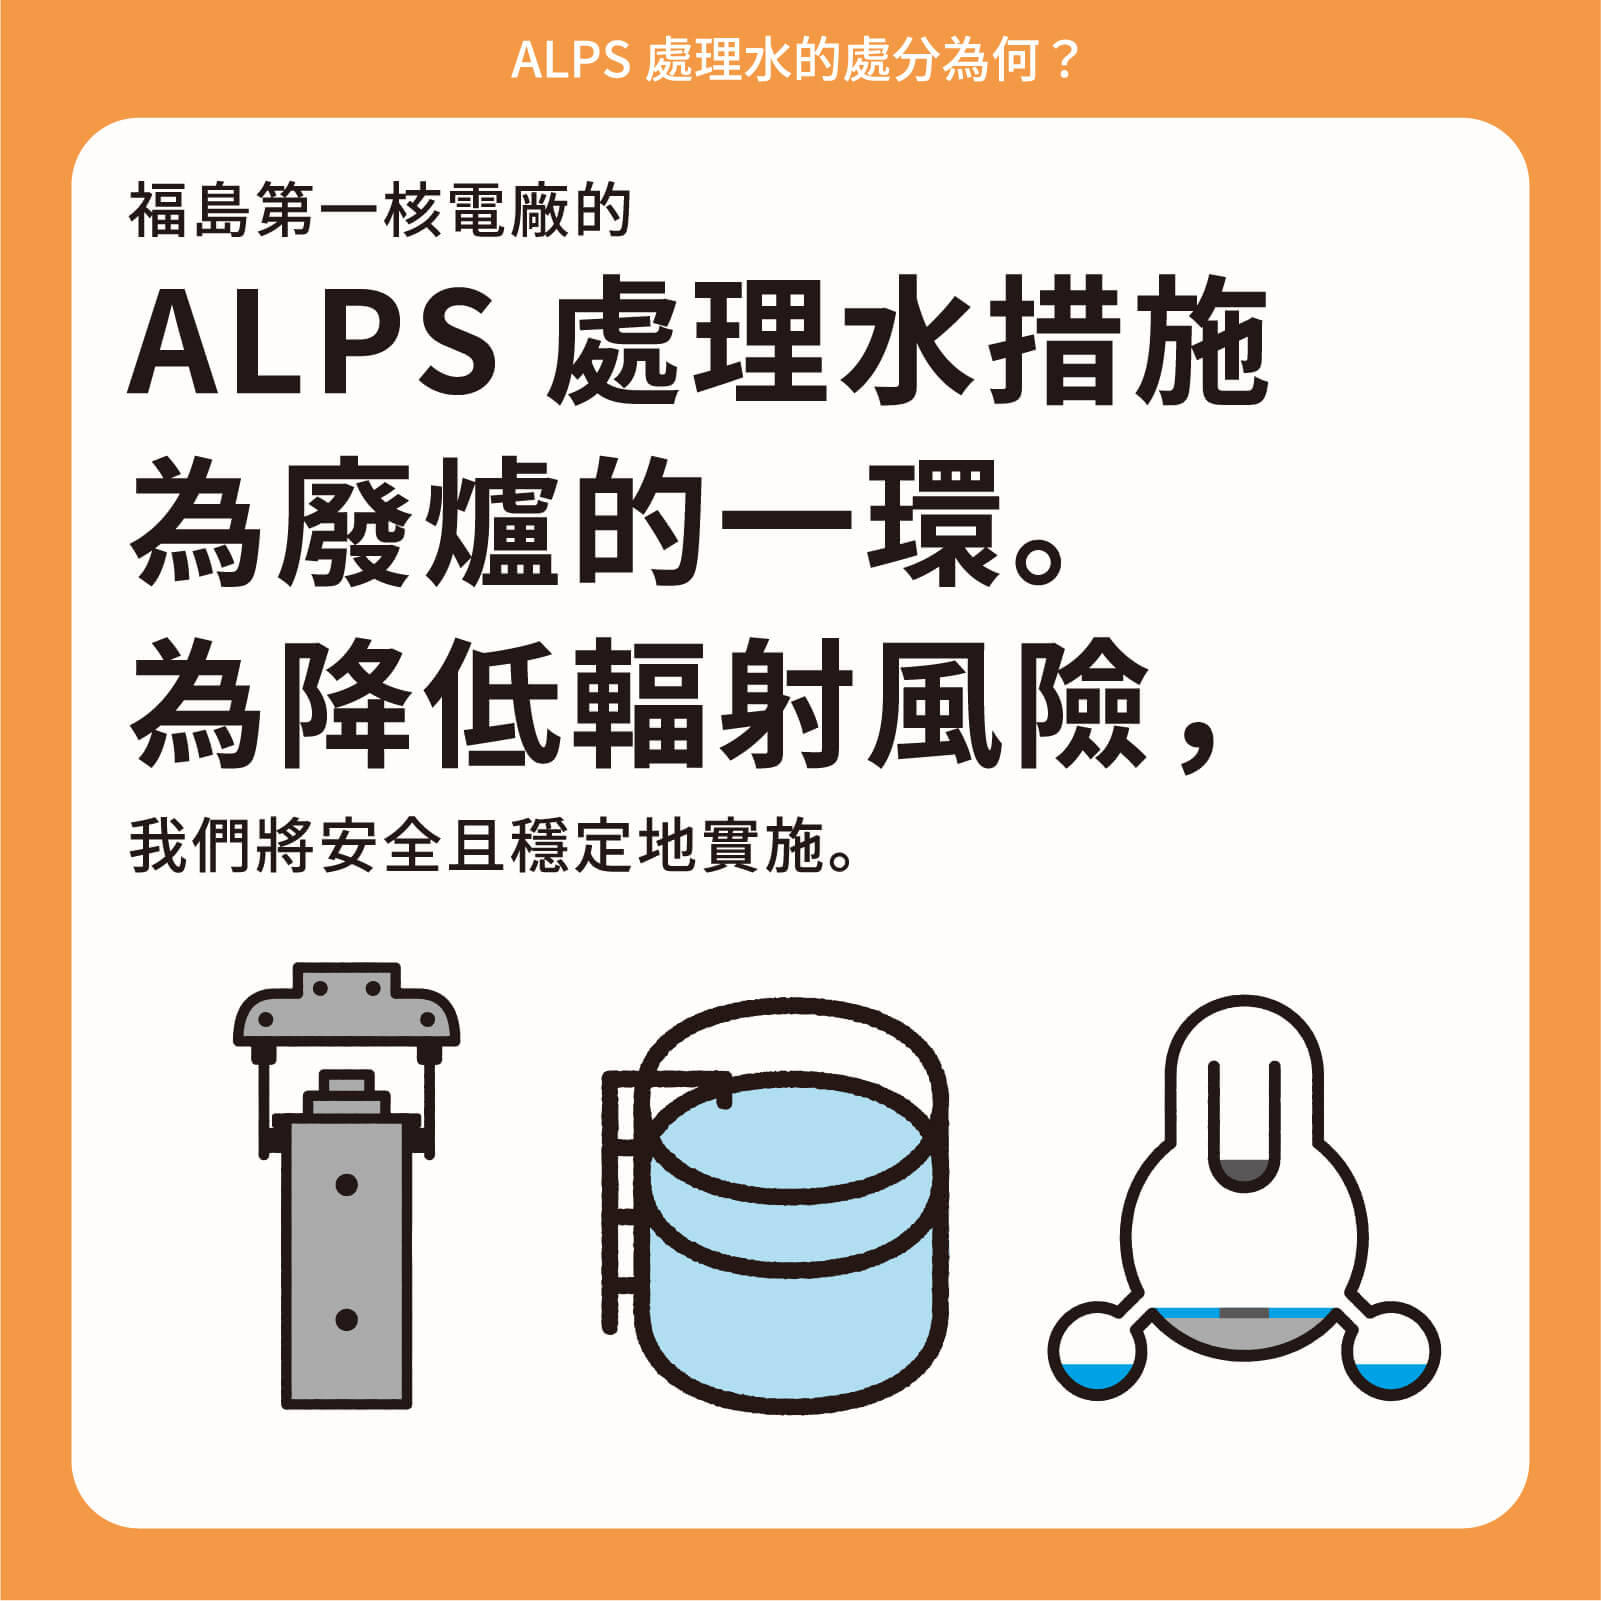 福島第一核電廠的ALPS處理水措施為廢爐的一環。為降低輻射風險，我們將安全且穩定地實施。